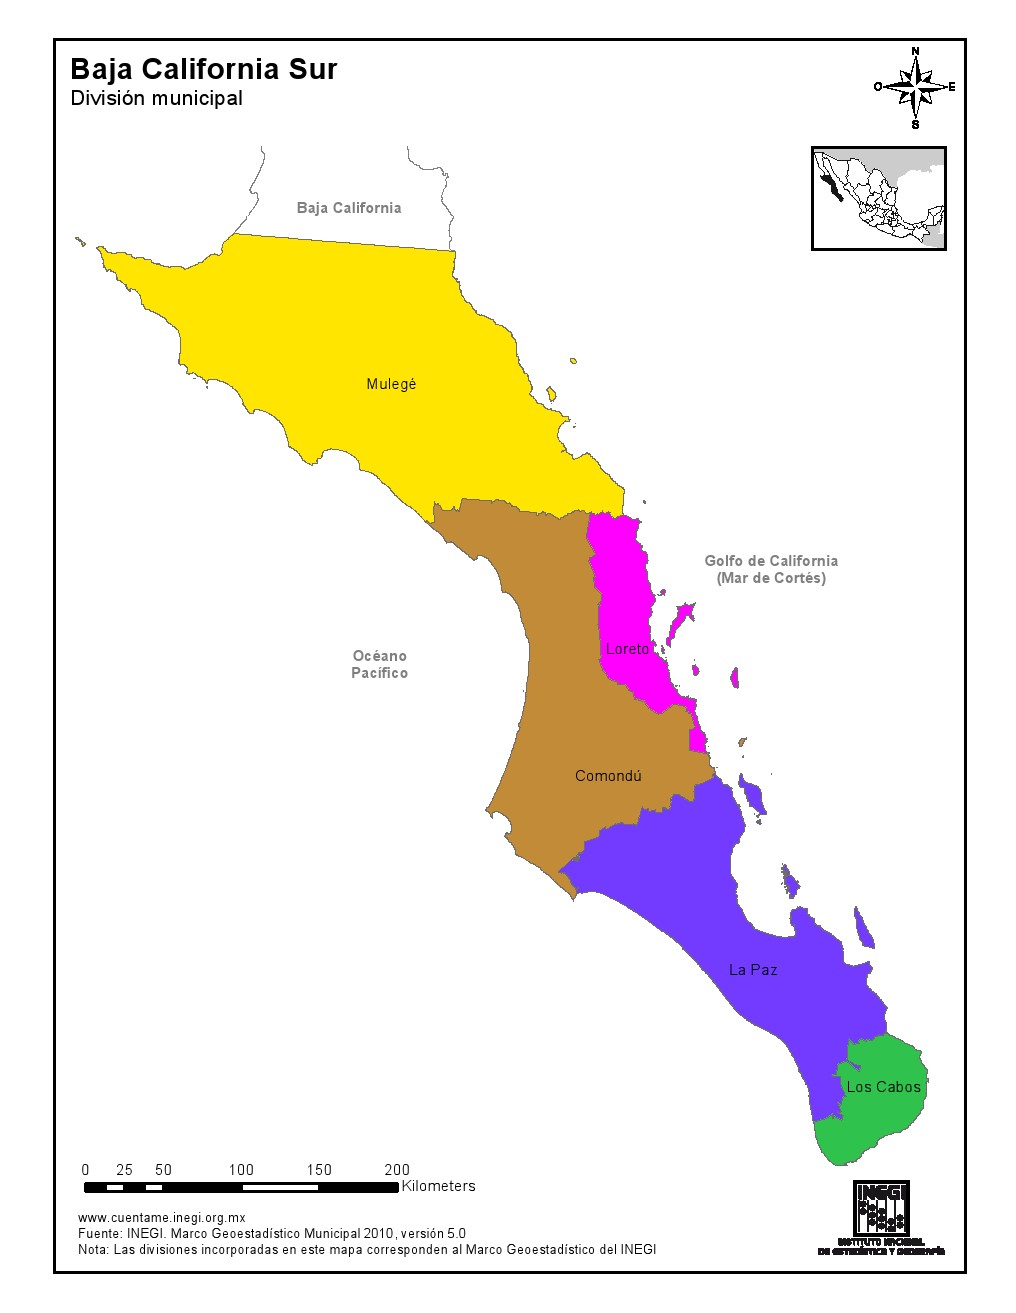 Mapa en color de los municipios de Baja California Sur. INEGI de México